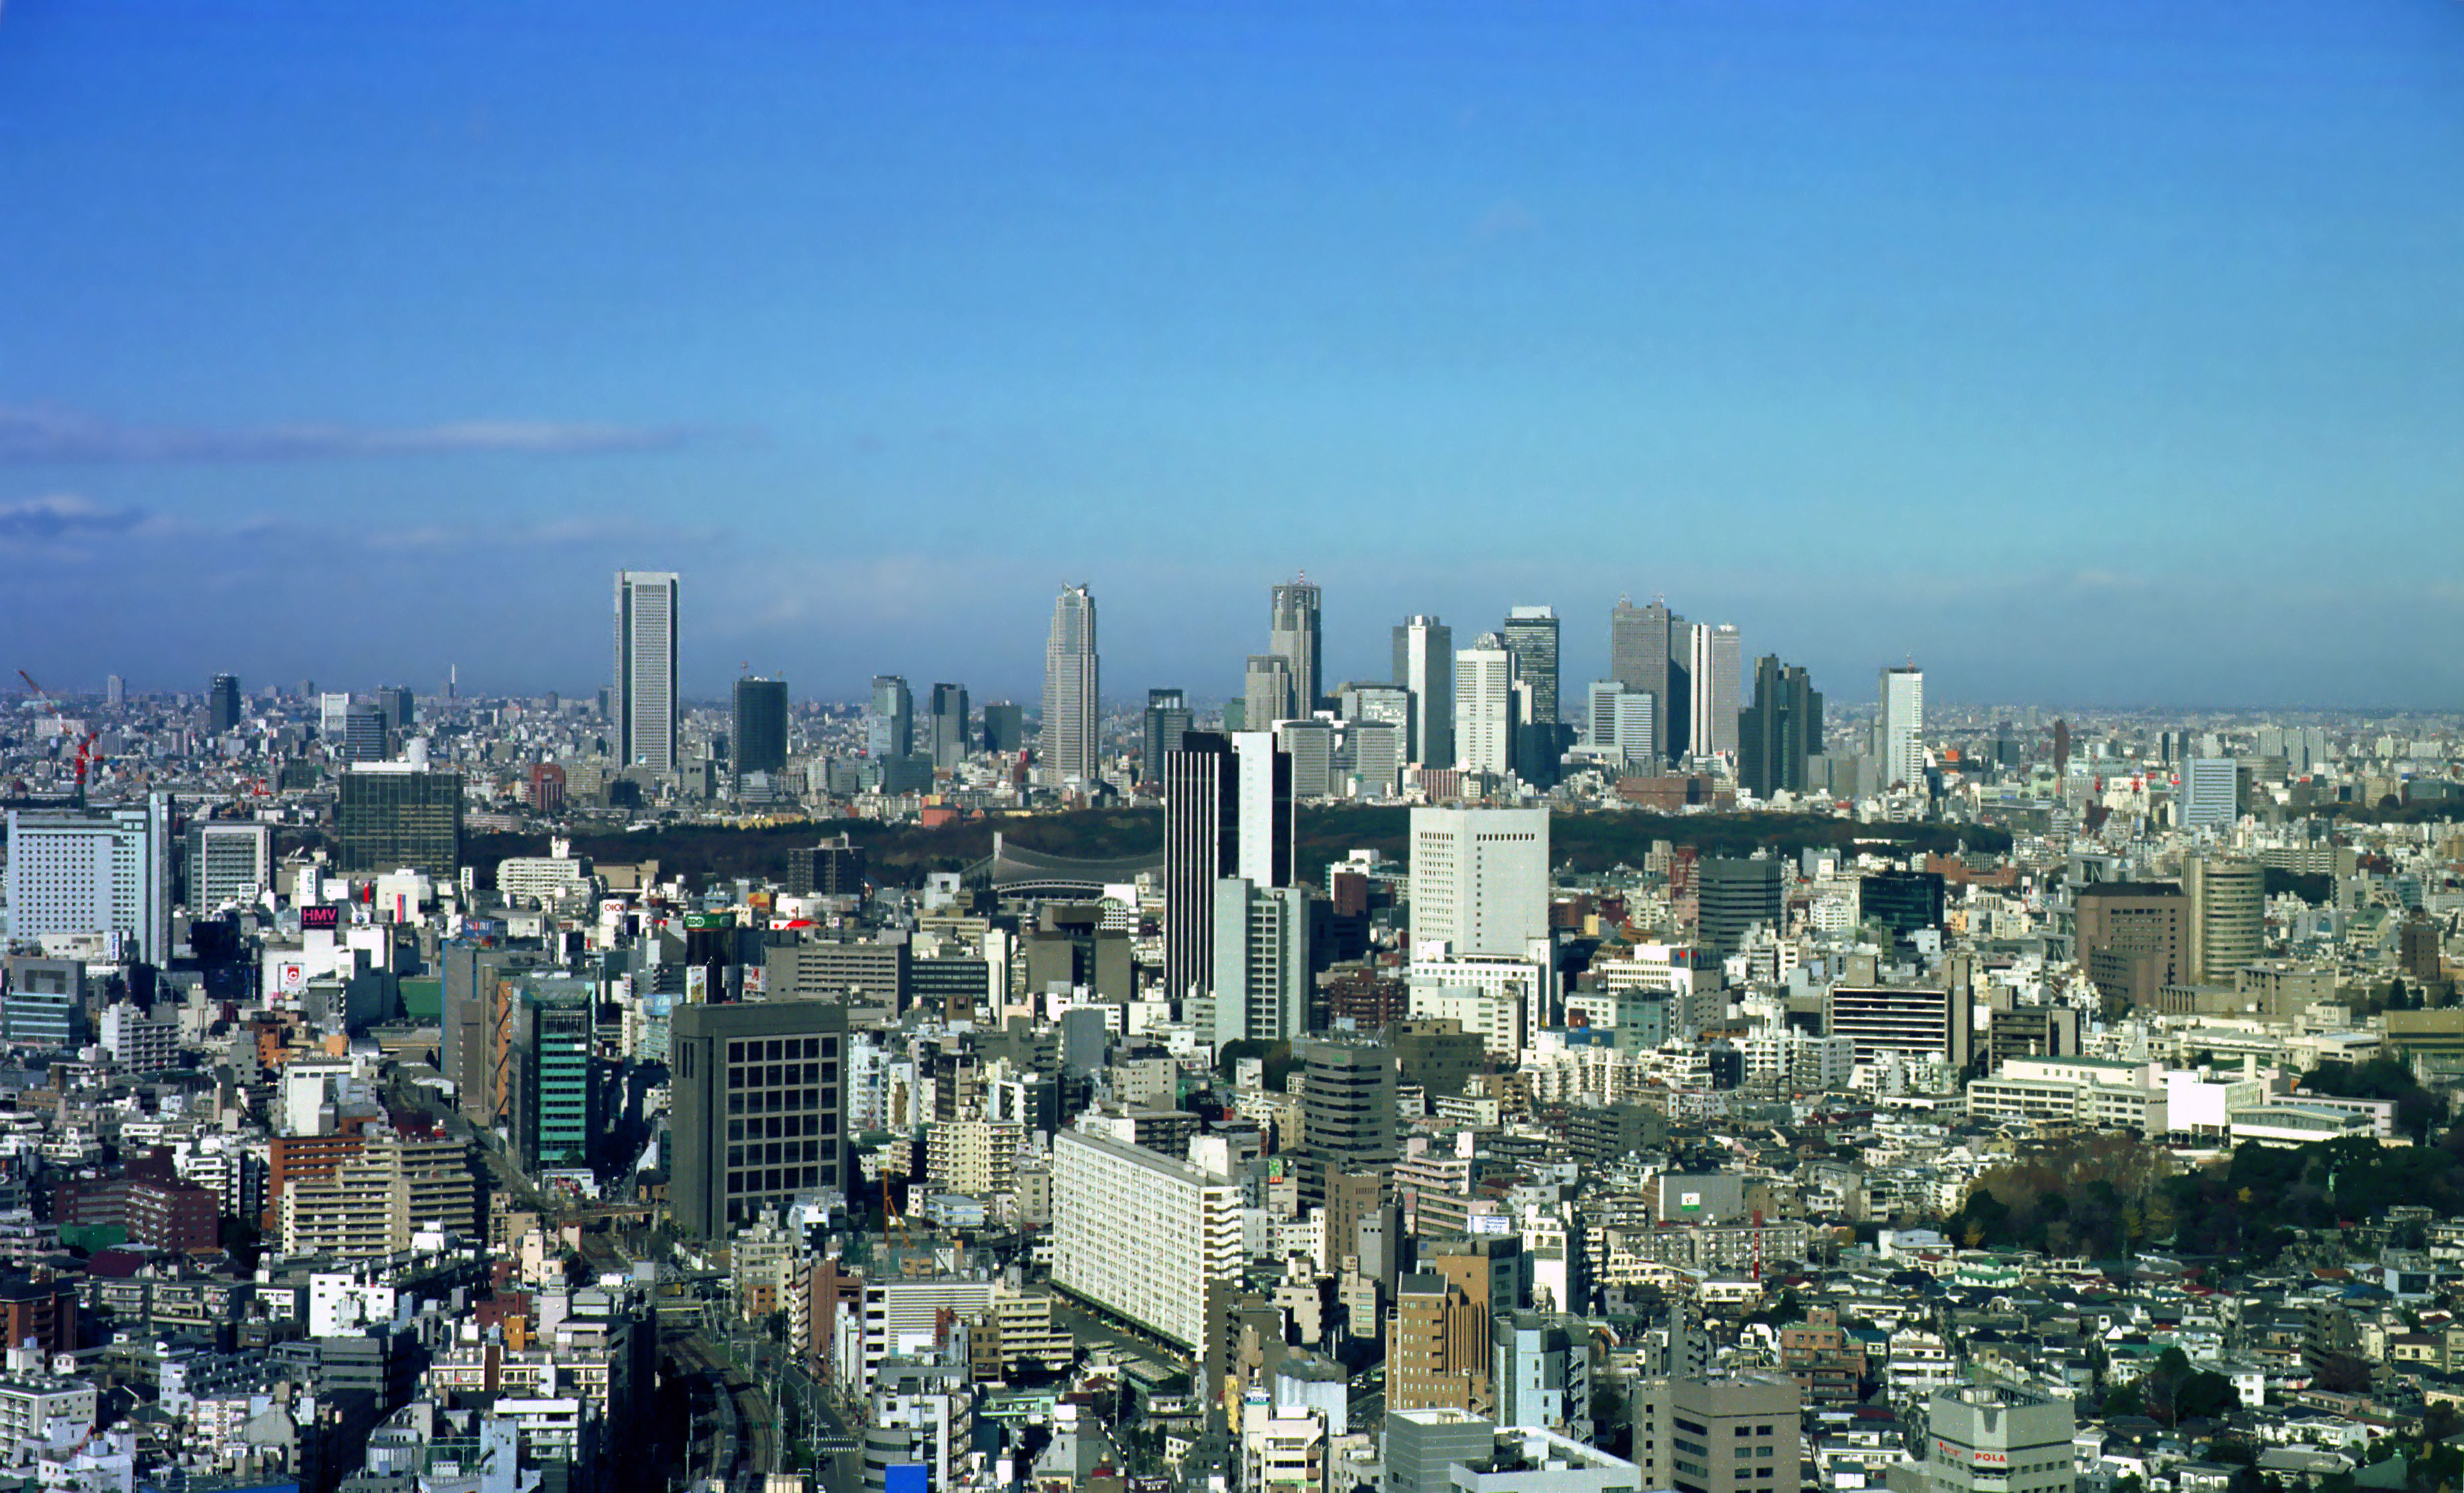 fotografia, material, livra, ajardine, imagine, proveja fotografia,Cena de Tquio, construindo, cidade, cu azul, 